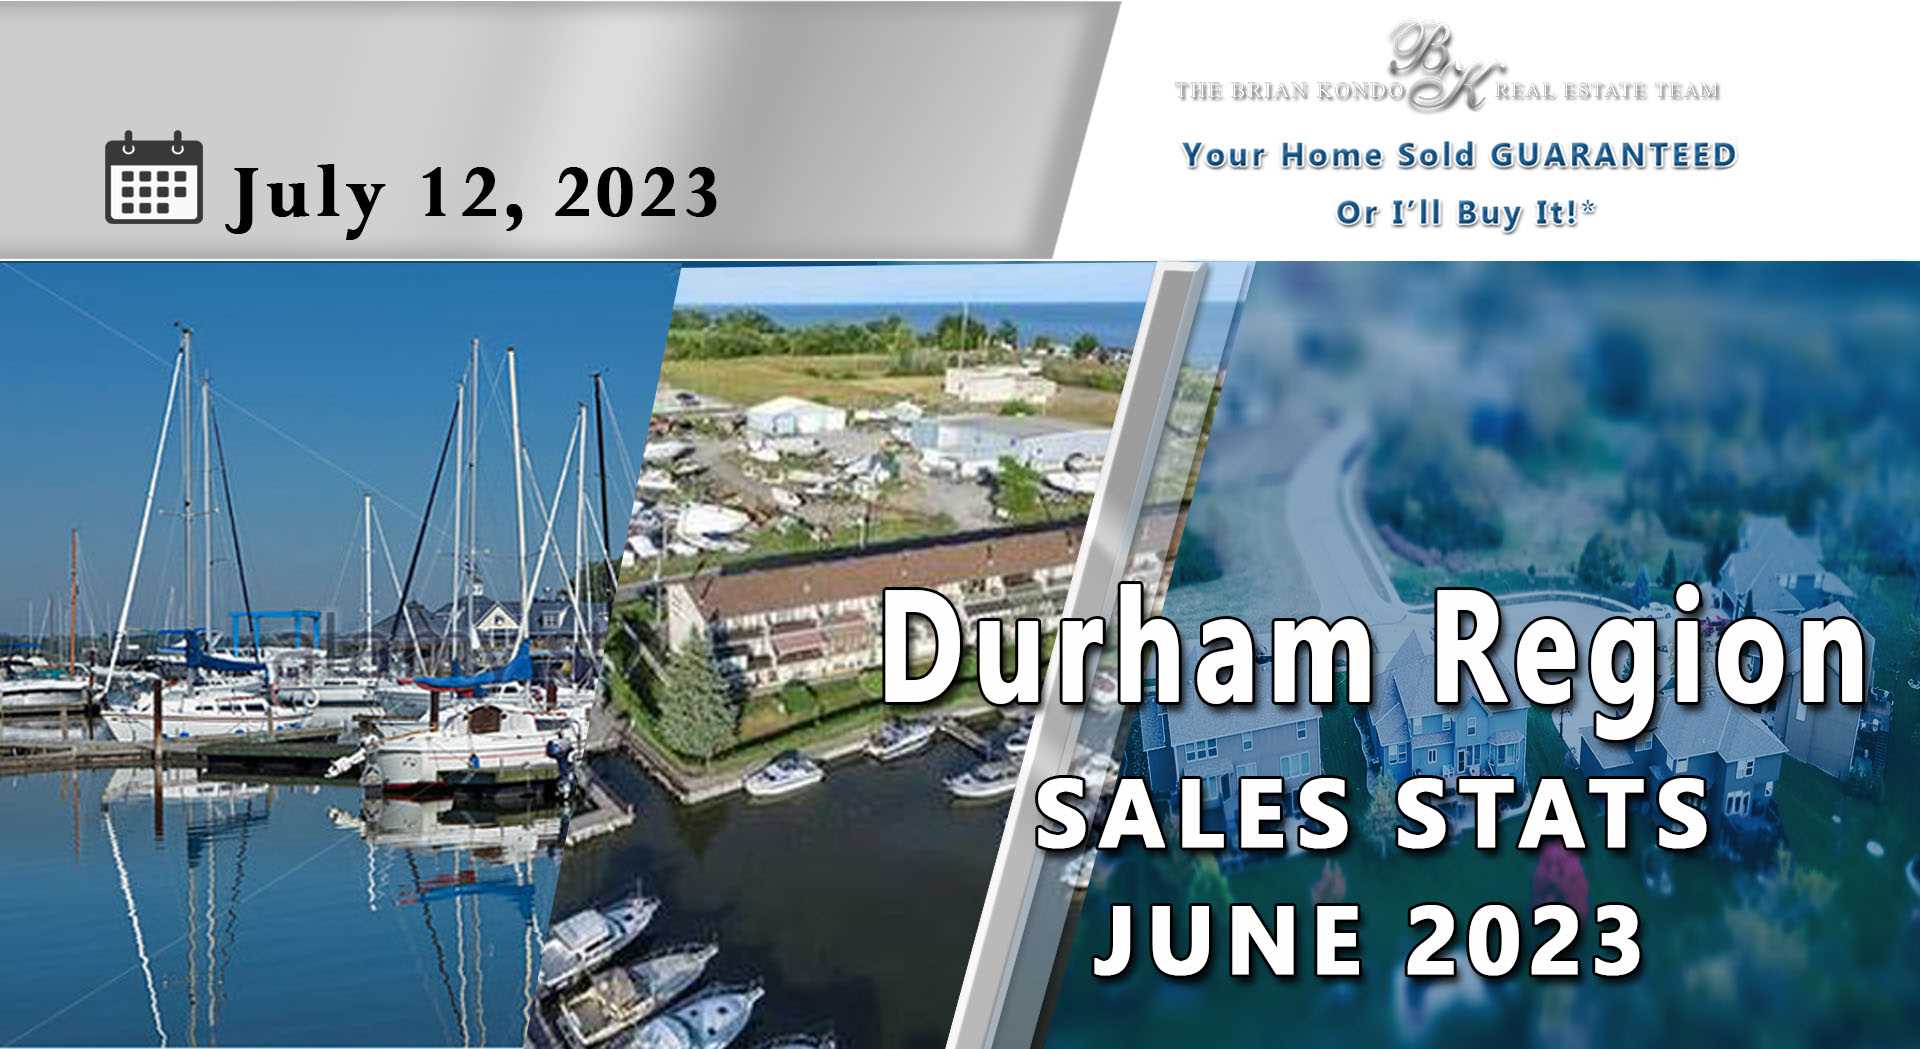 DURHAM REGION SALES STATS JUNE 2023